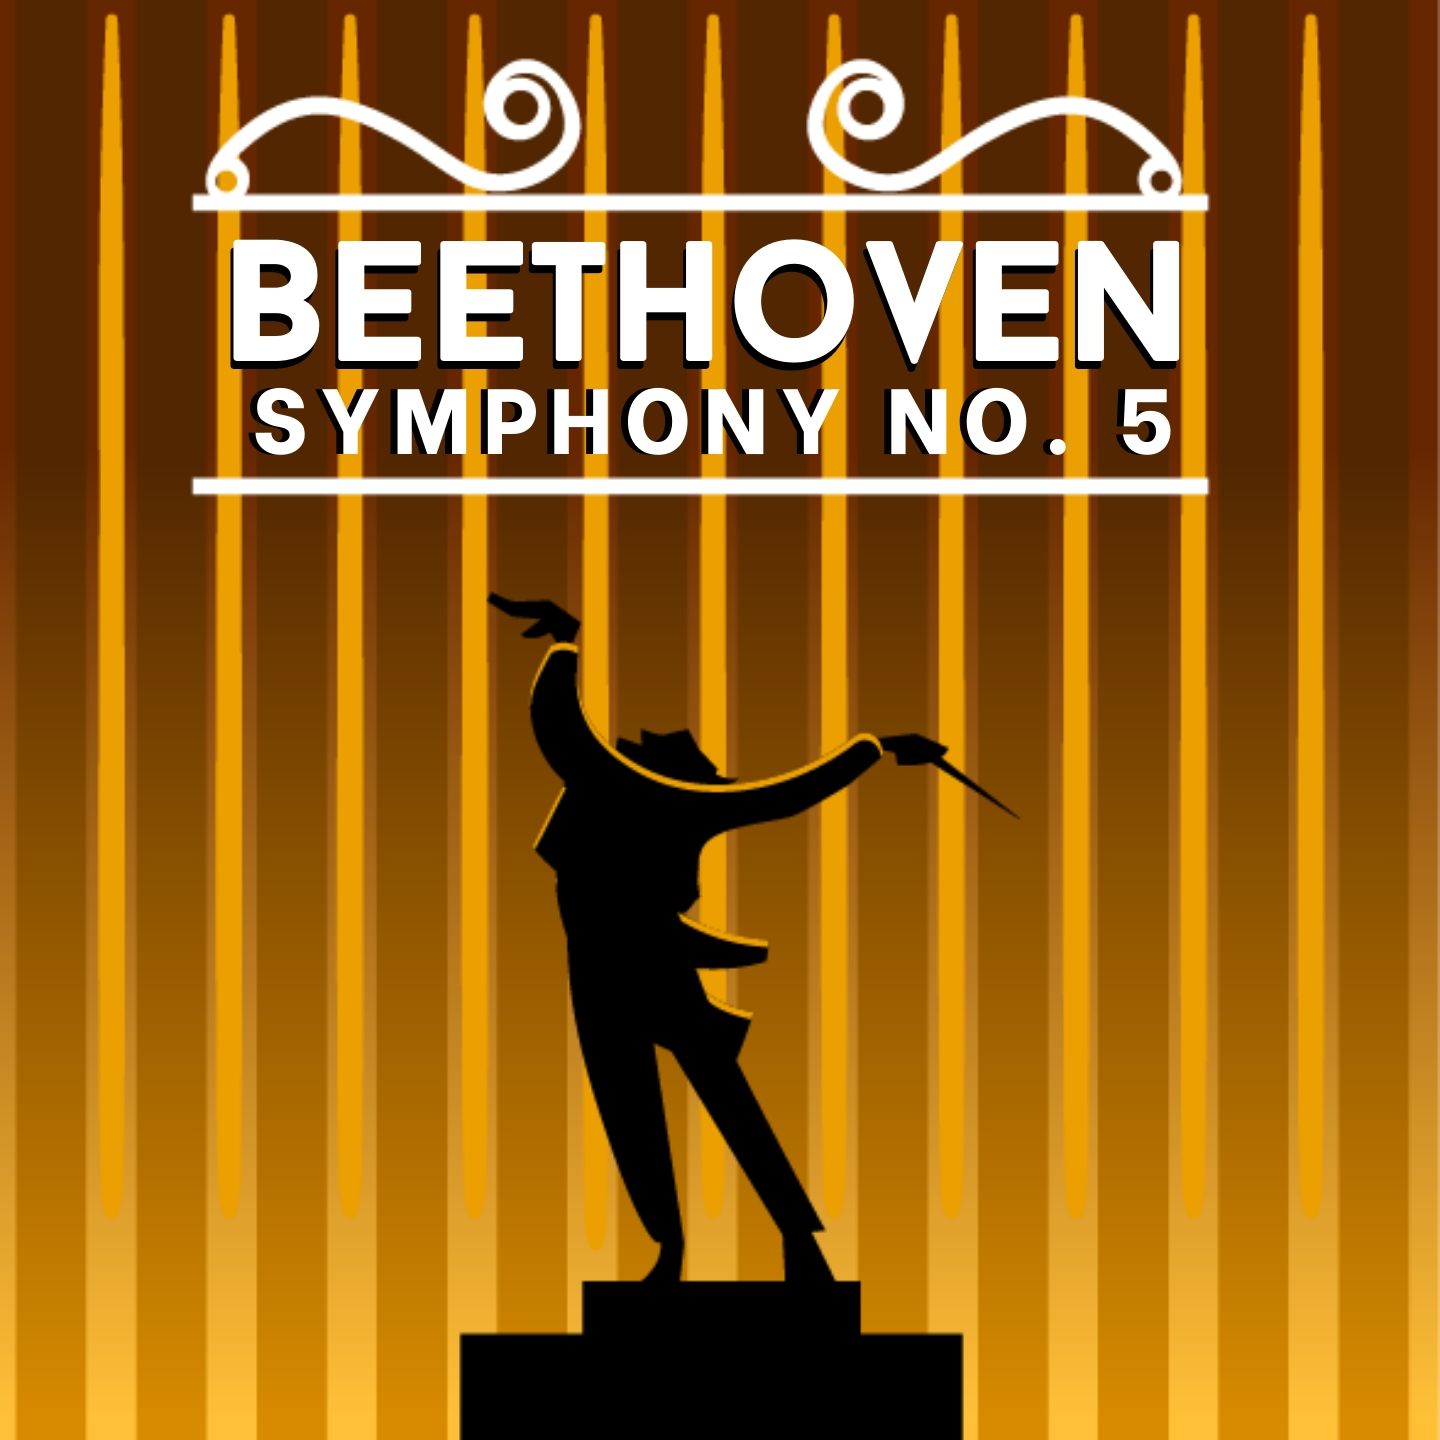 Beethoven: Symphony No. 5 in C minor, Op. 67